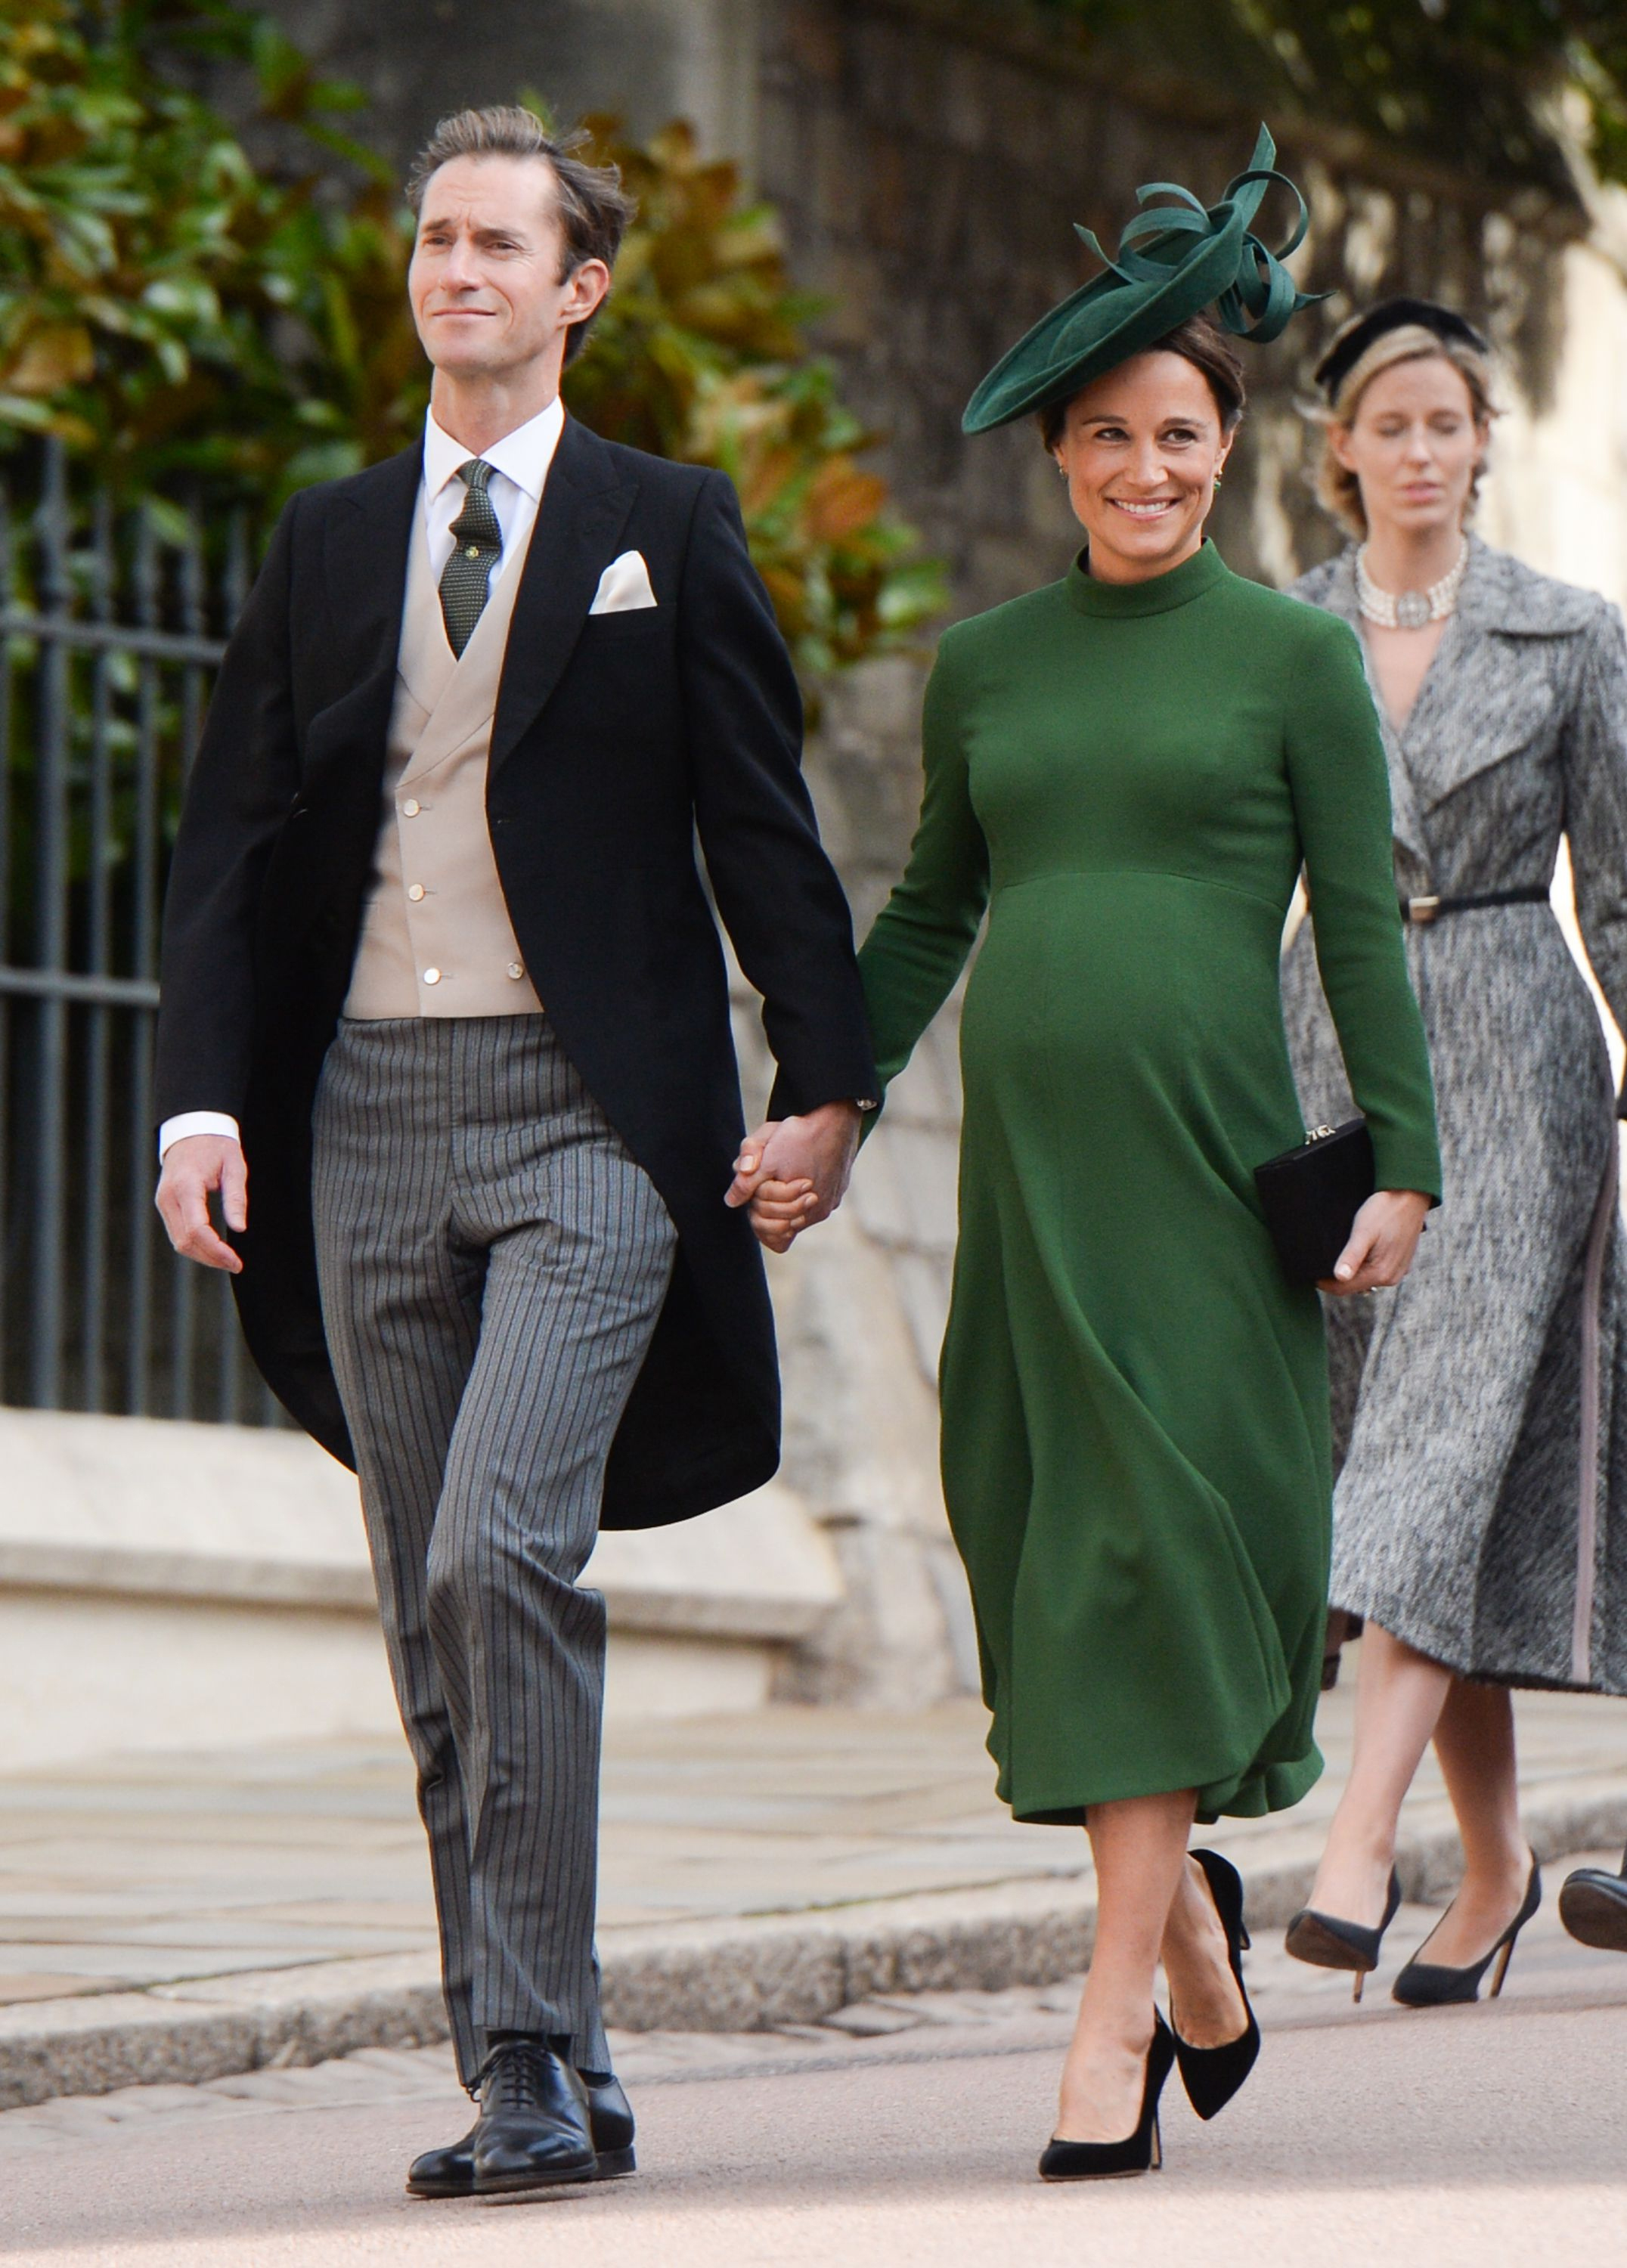 Pippa Middleton, irmã de Kate Middleton, casou-se com o empresário James Matthews em maio.